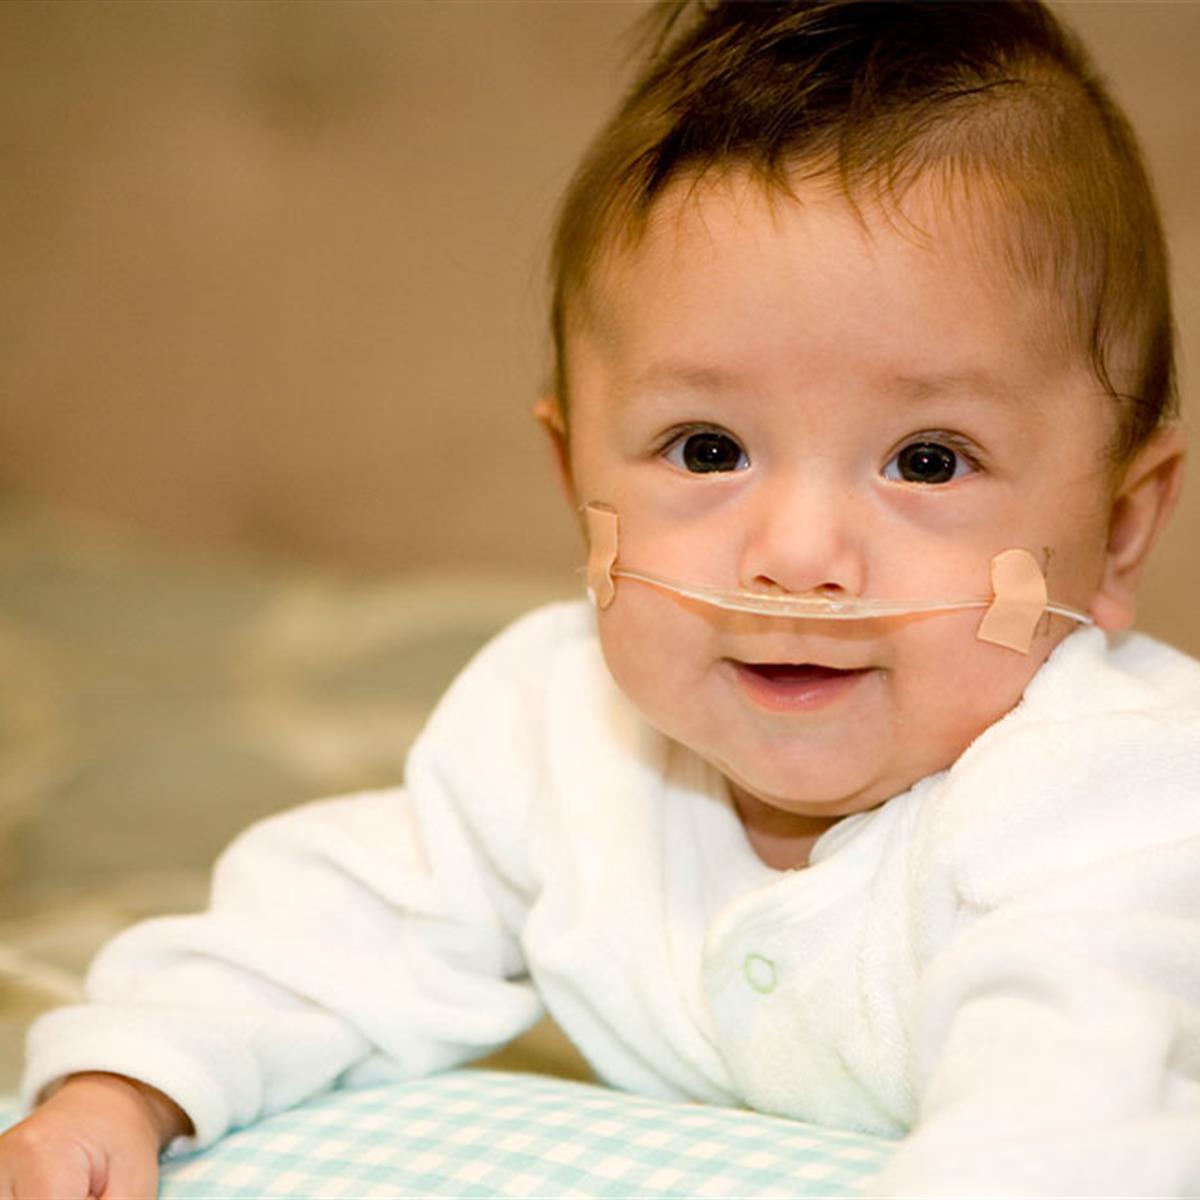 https://www.healthychildren.org/SiteCollectionImagesArticleImages/premature-baby-boy.jpg?RenditionID=6